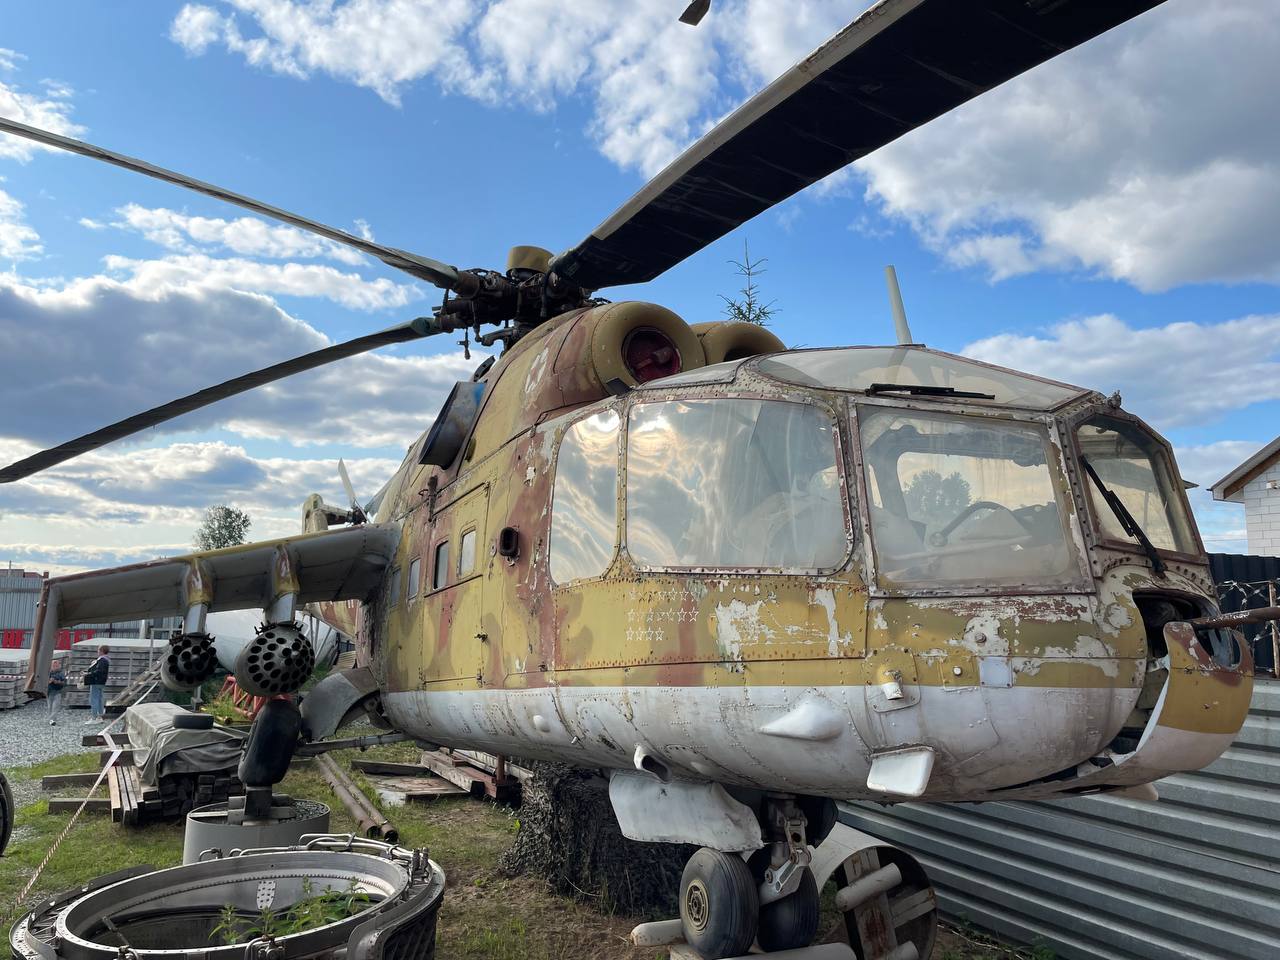 продам вертолет Ми-24 в музей